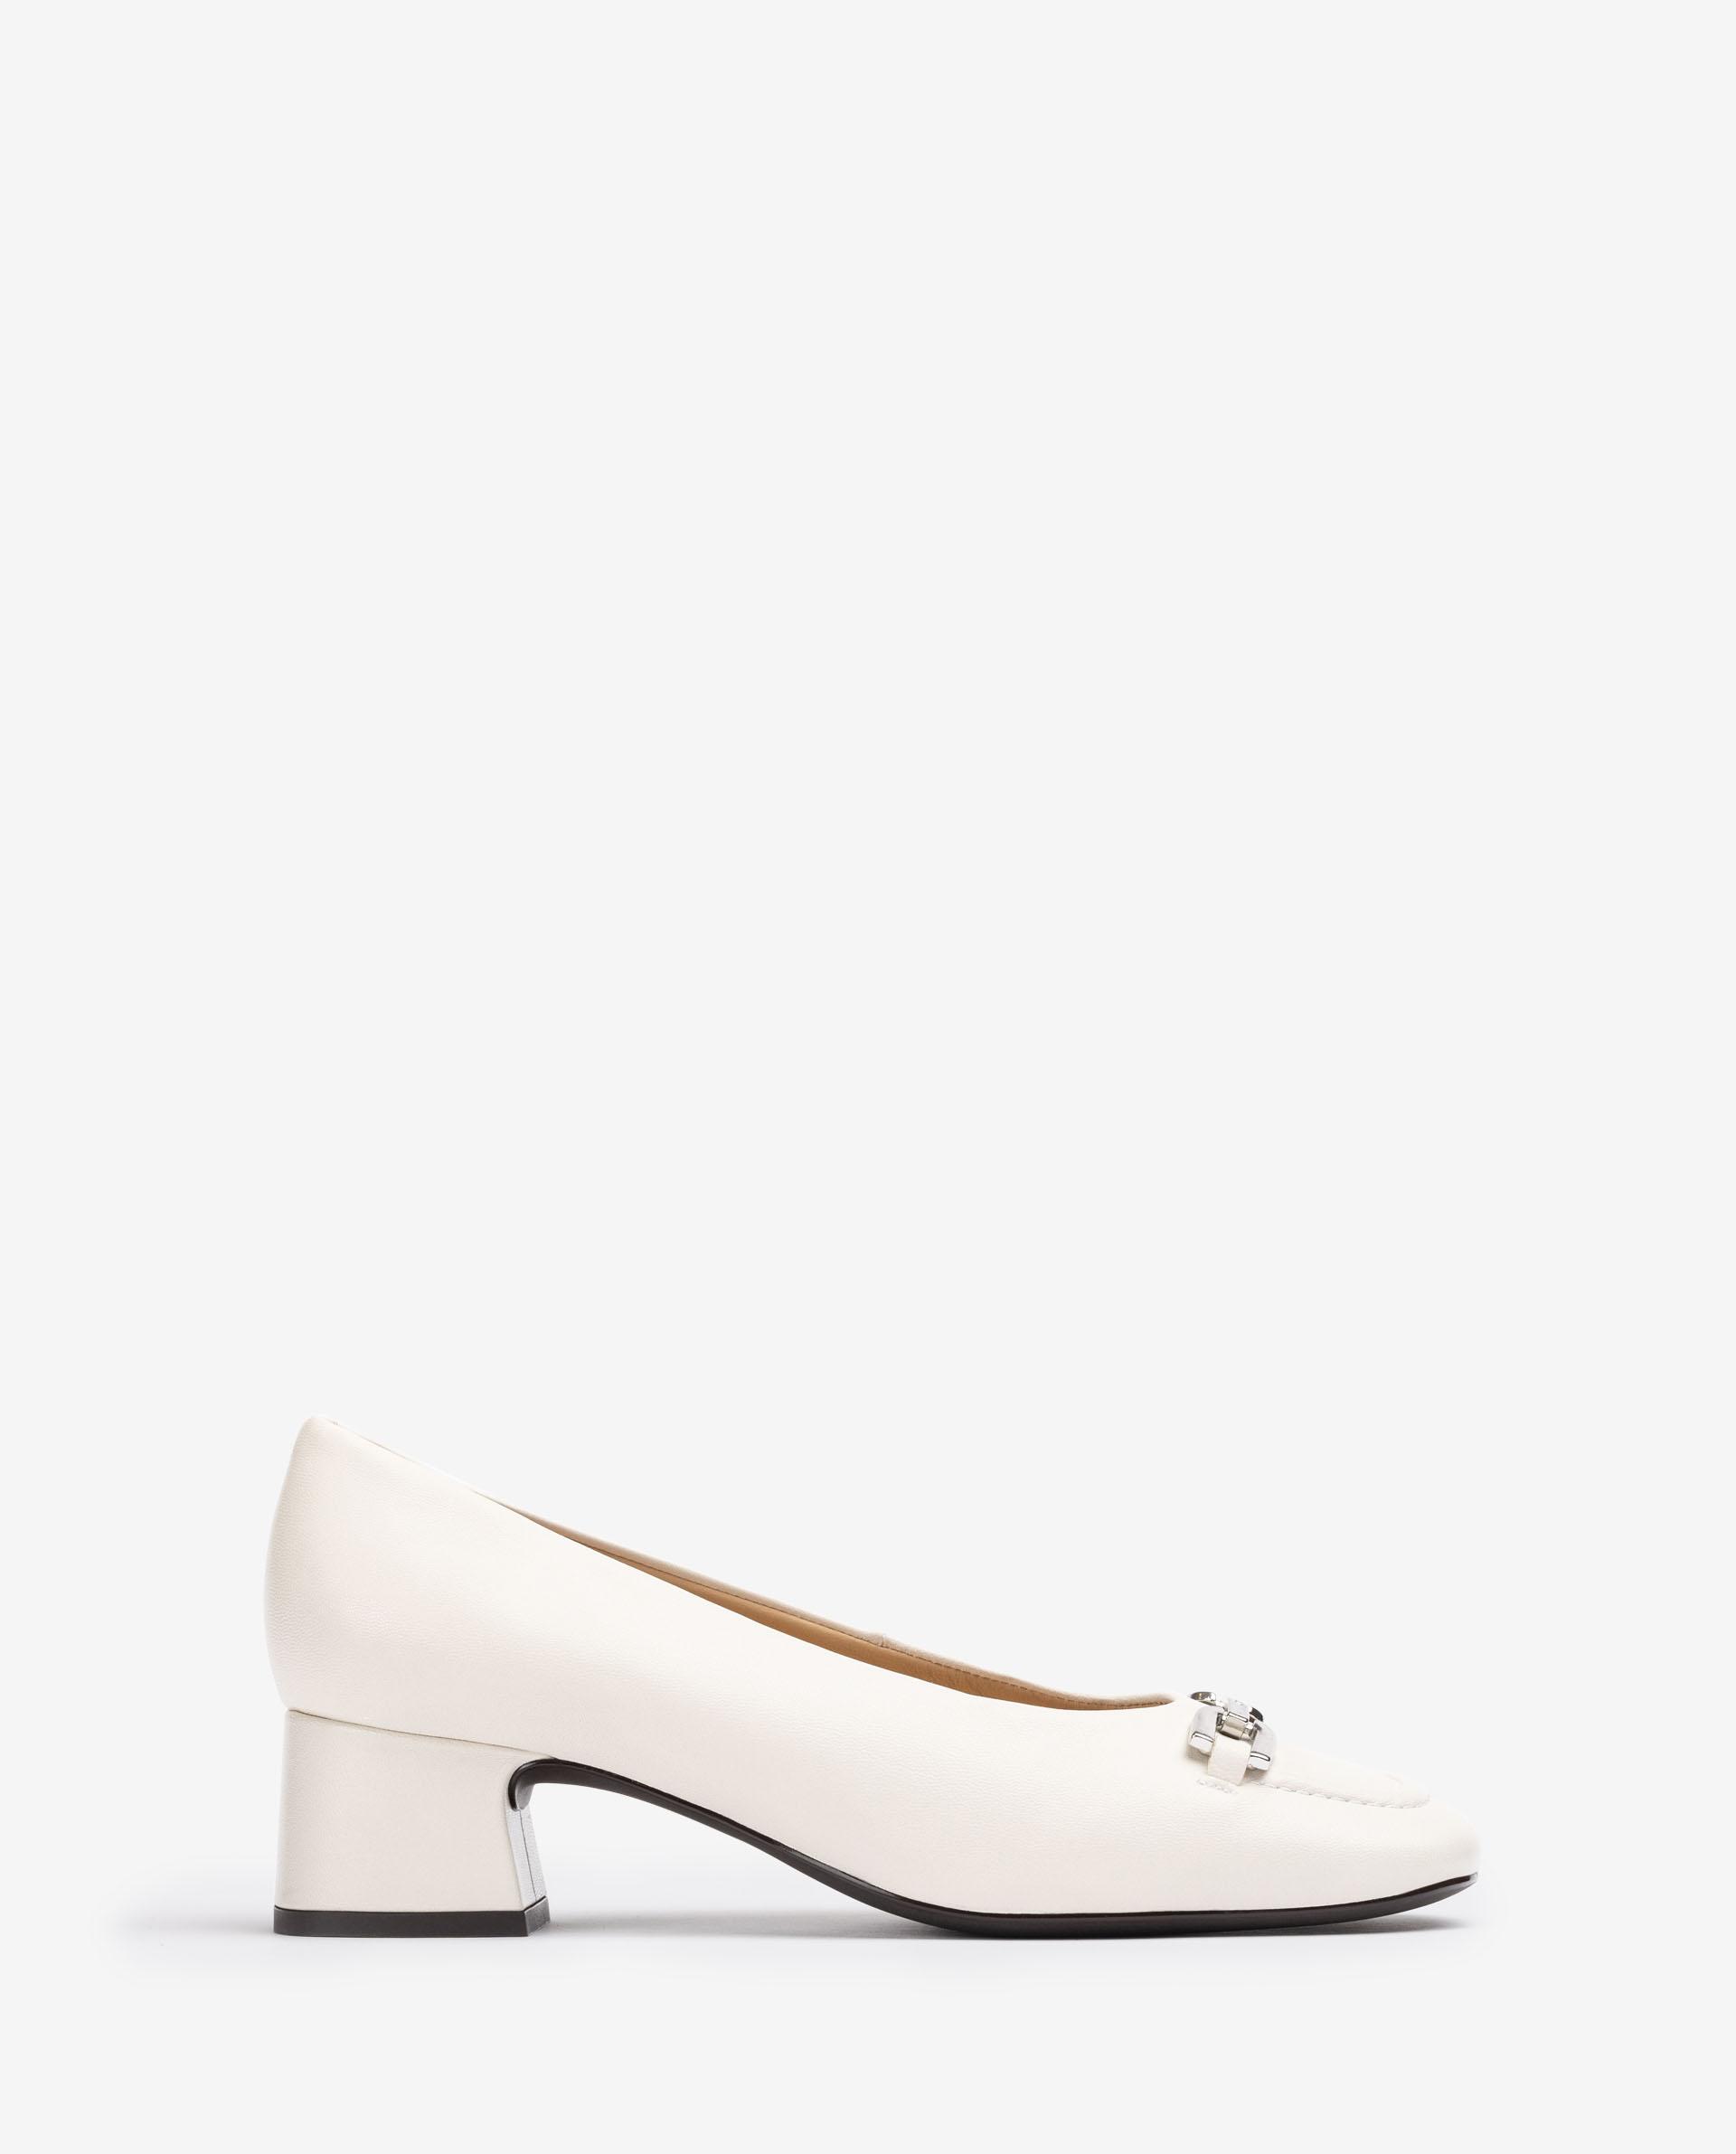 Creo que Visualizar Normal Zapatos Blancos Mujer UNISA - Bailarinas, Botines y Zapatillas Blancas